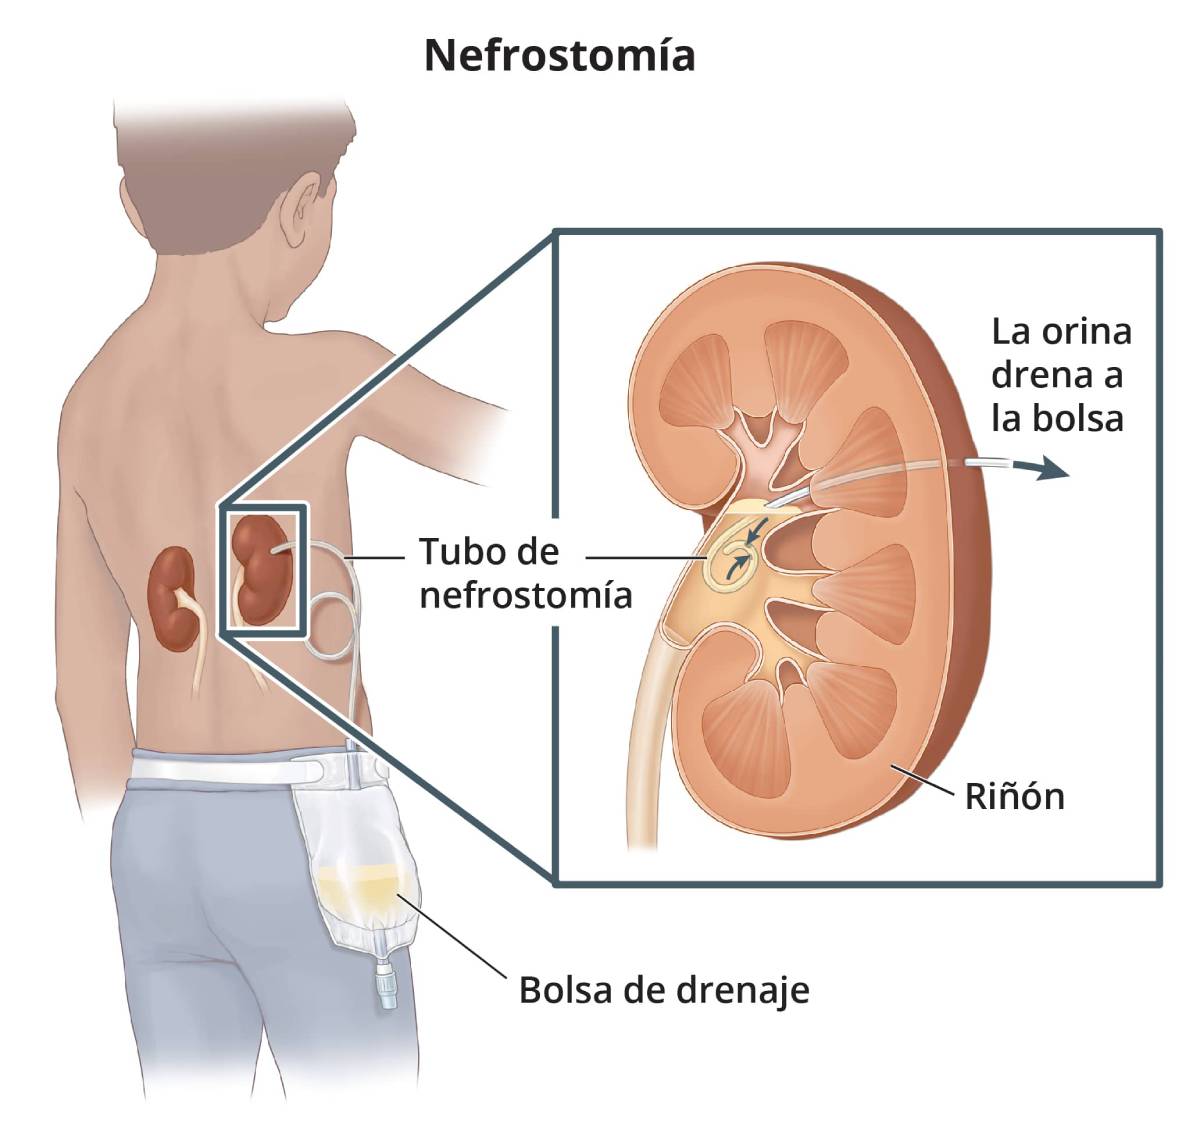 Un tubo de nefrostomía insertado en el riñón a través de la espalda del paciente y conectado a una bolsa de drenaje externa.